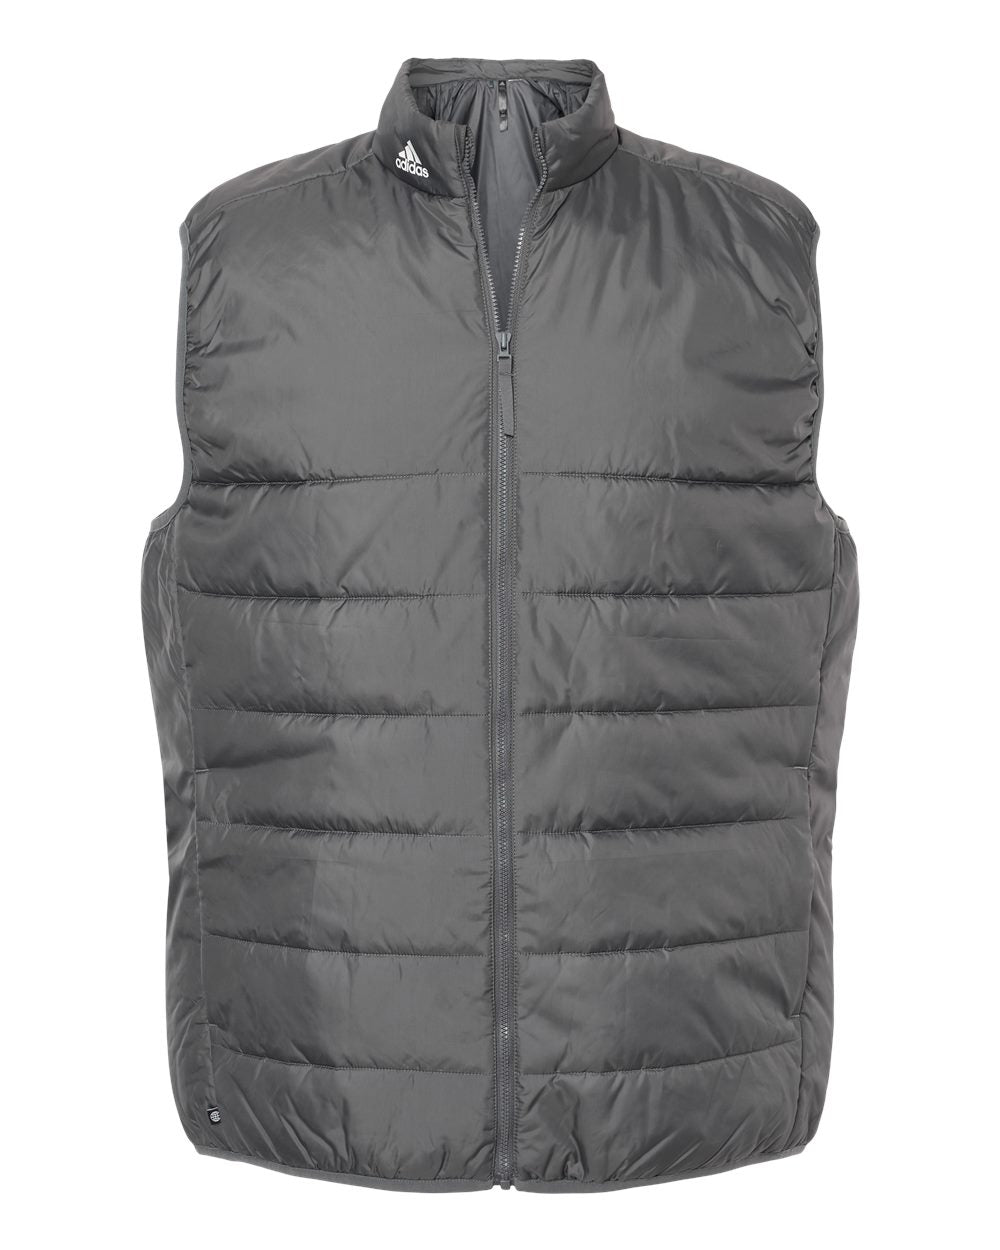 Adidas Full Zip Puffer Vest (A572)